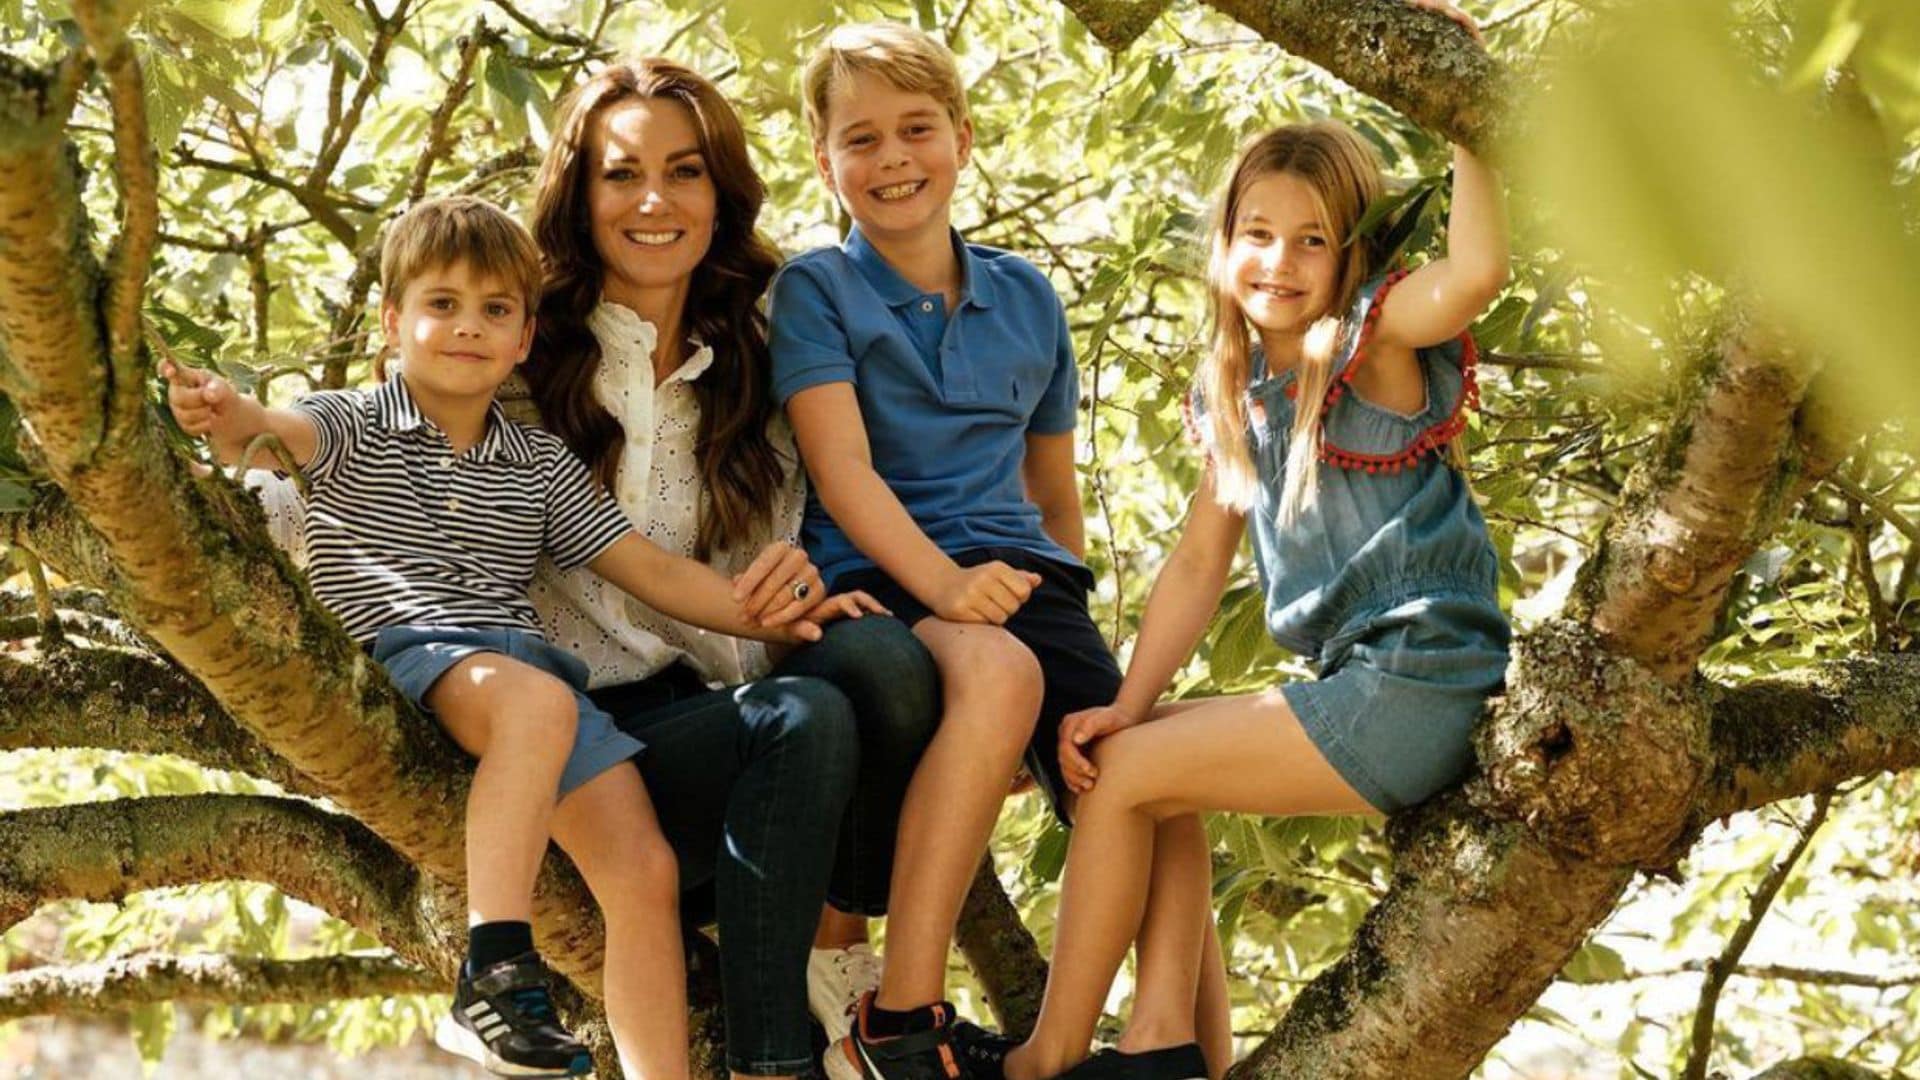 La princesa de Gales, radiante junto a sus tres hijos en plena naturaleza durante el Día de la Madre inglés